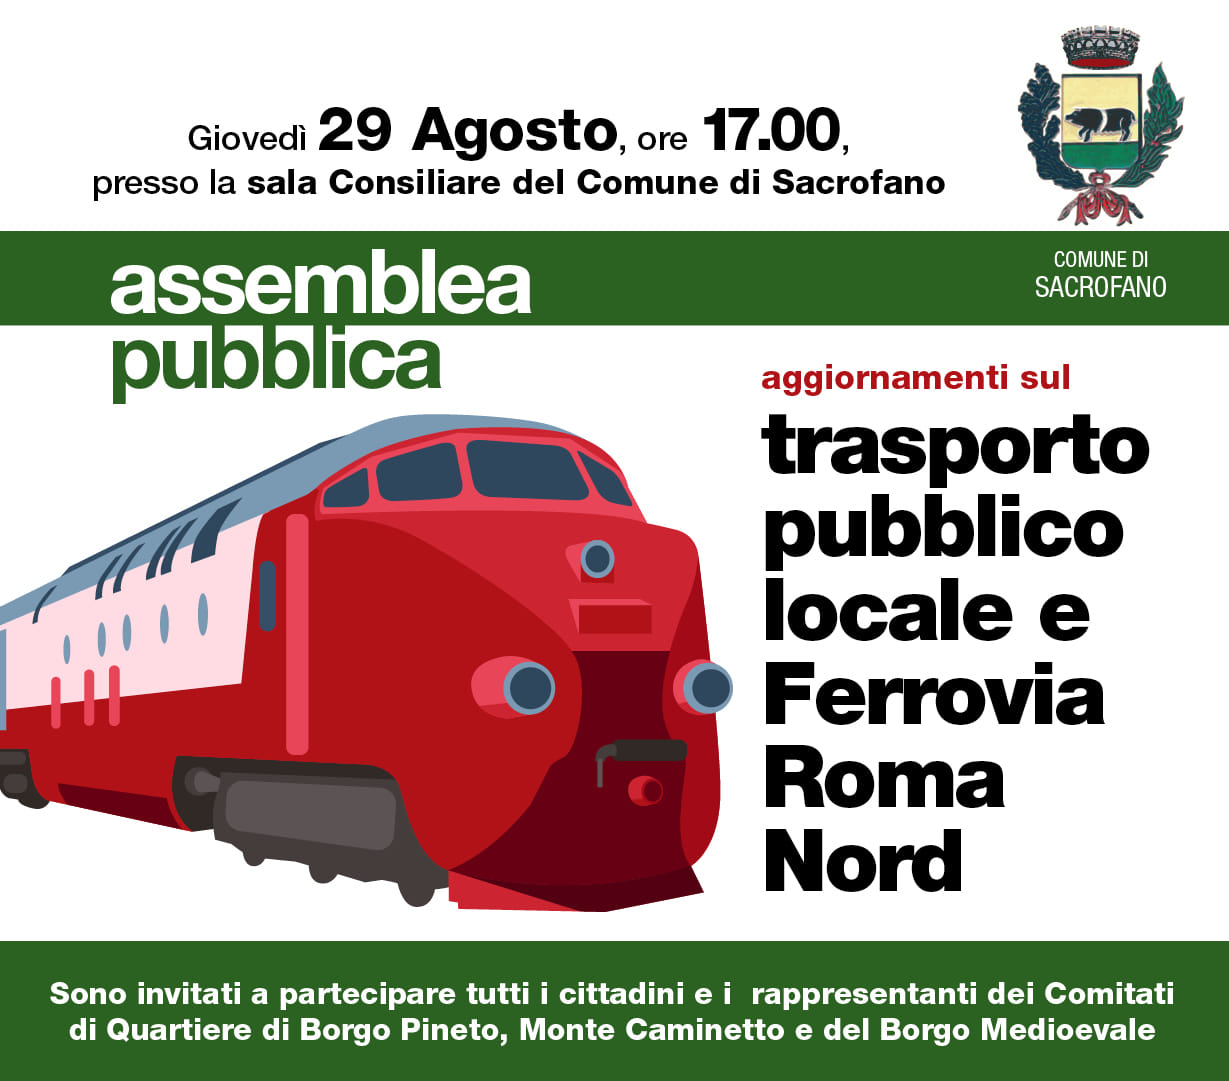 Assemblea pubblica per aggiornamenti sulla situazione del trasporto pubblico e della ferrovia Roma Nord